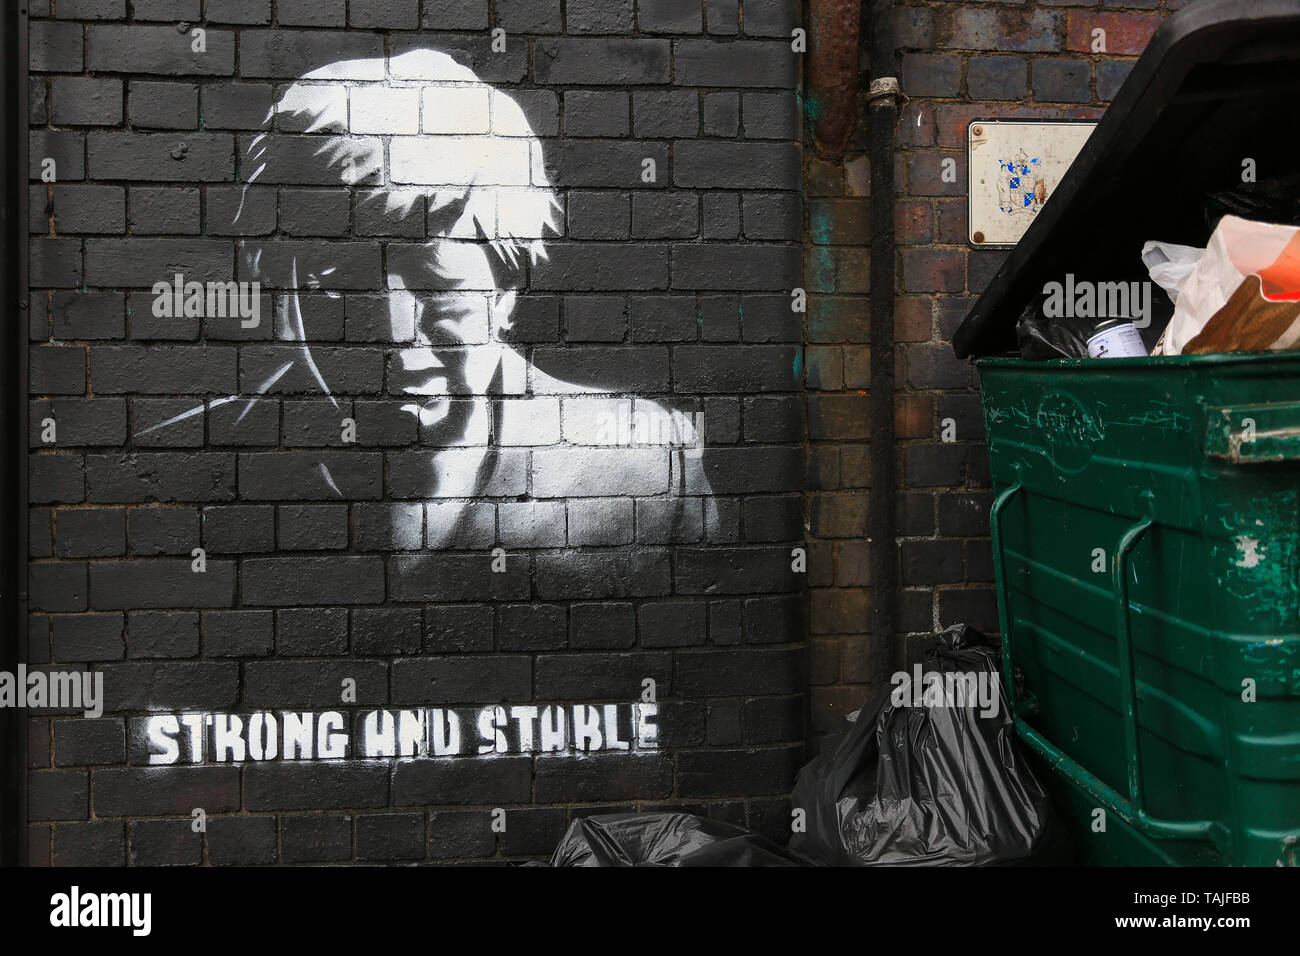 Birmingham, Großbritannien. 26 Mai, 2019. Ein Stück der Graffiti Kunst hat in der Nacht auf einer Straße Ecke in Birmingham scheinbar spöttisch emotionalen Resignation Rede des britischen Premierministers sowie TRONG von der Konservativen Partei 2017 Slogan und stabil" erschienen. Die Graffiti hat geschickt worden auf eine Mauer in Digbeth - einer heruntergekommenen Gegend von Birmingham City gesprüht. Die Arbeit erscheint wie eine Banksy - style politische Aussage und Gerüchte auf Facebook behaupten, es von einem lokalen Künstler Mohammed Ali Aerosol werden, obwohl dies nicht bestätigt werden kann. Kredit: Kredite: Peter Lopeman/Alamy leben Nachrichten Stockfoto